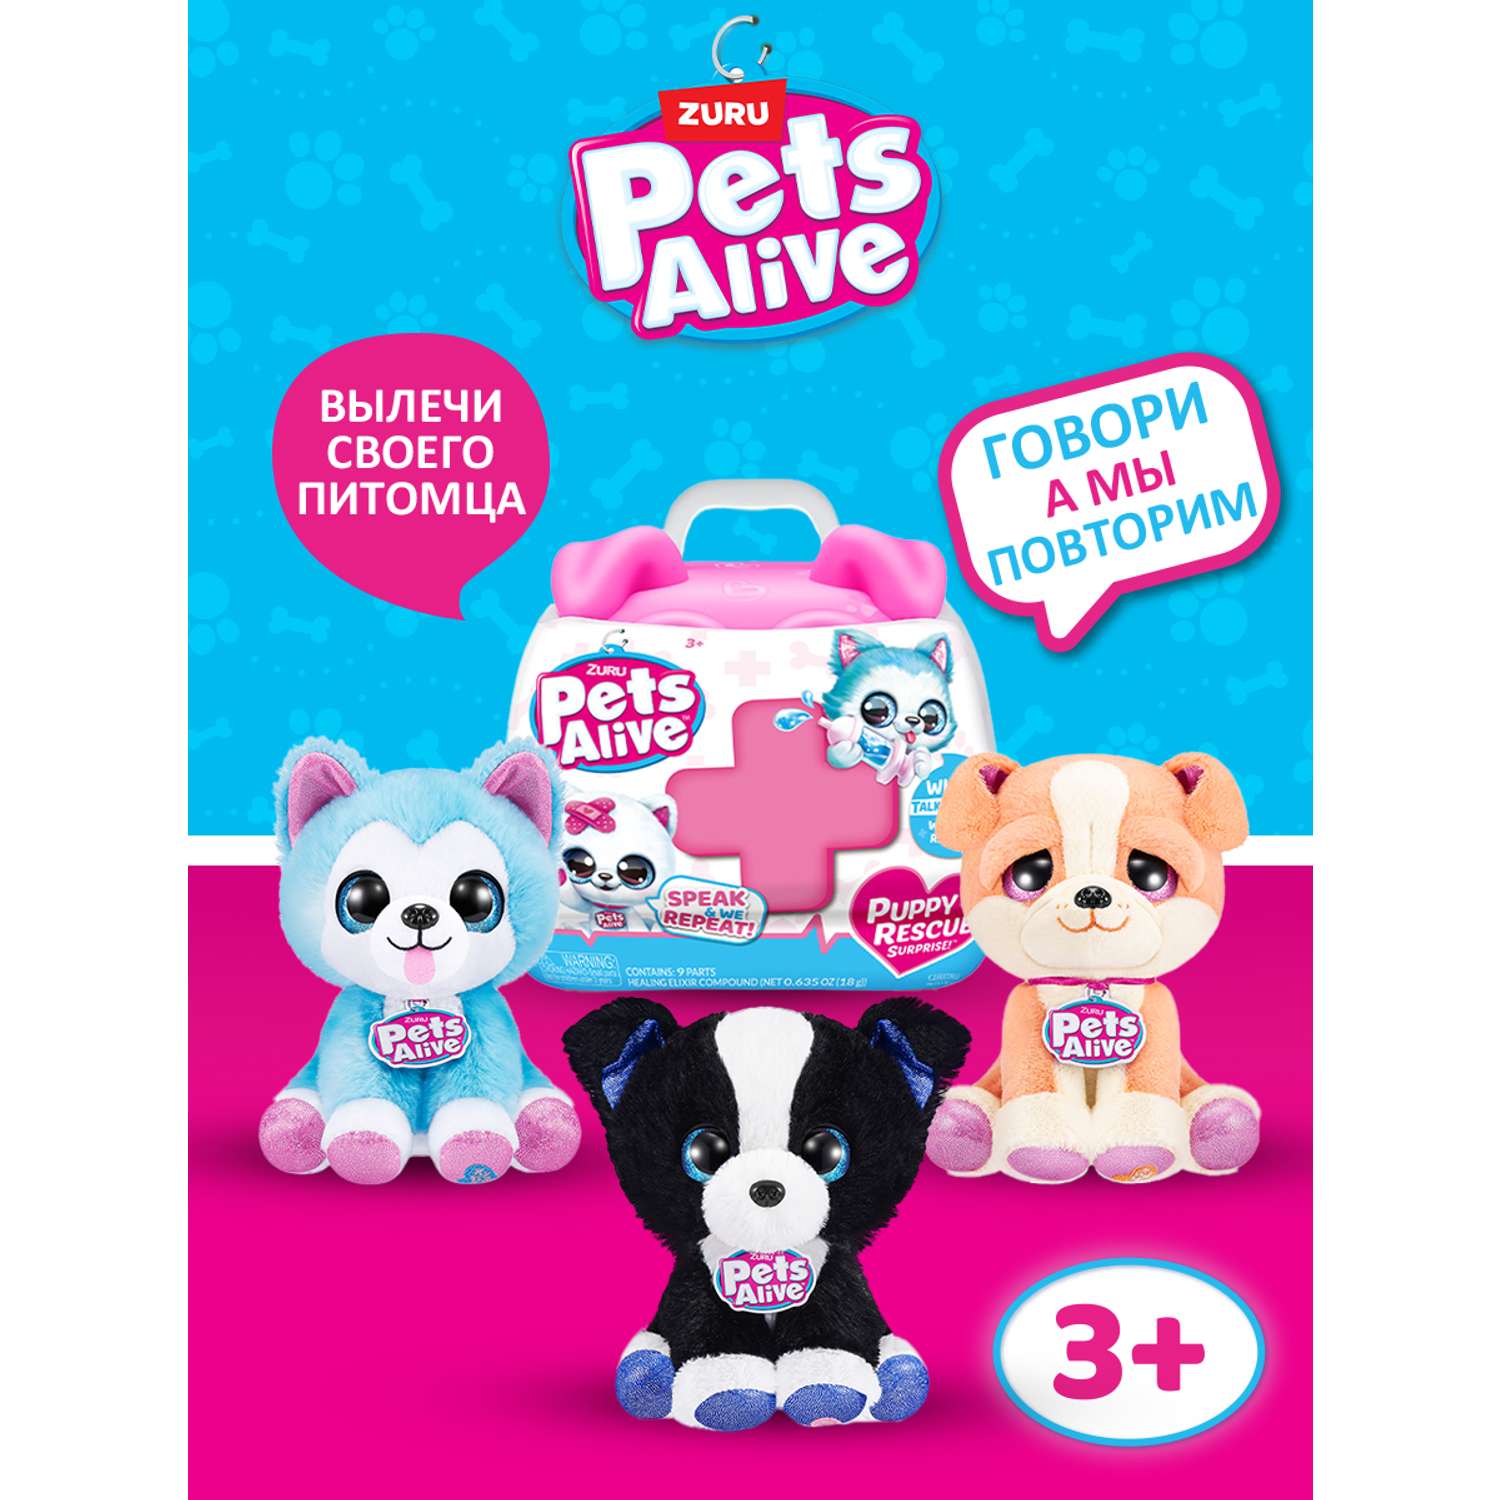 Игрушка Pets Alive Puppy Rescue в непрозрачной упаковке (Сюрприз) 9540 - фото 1